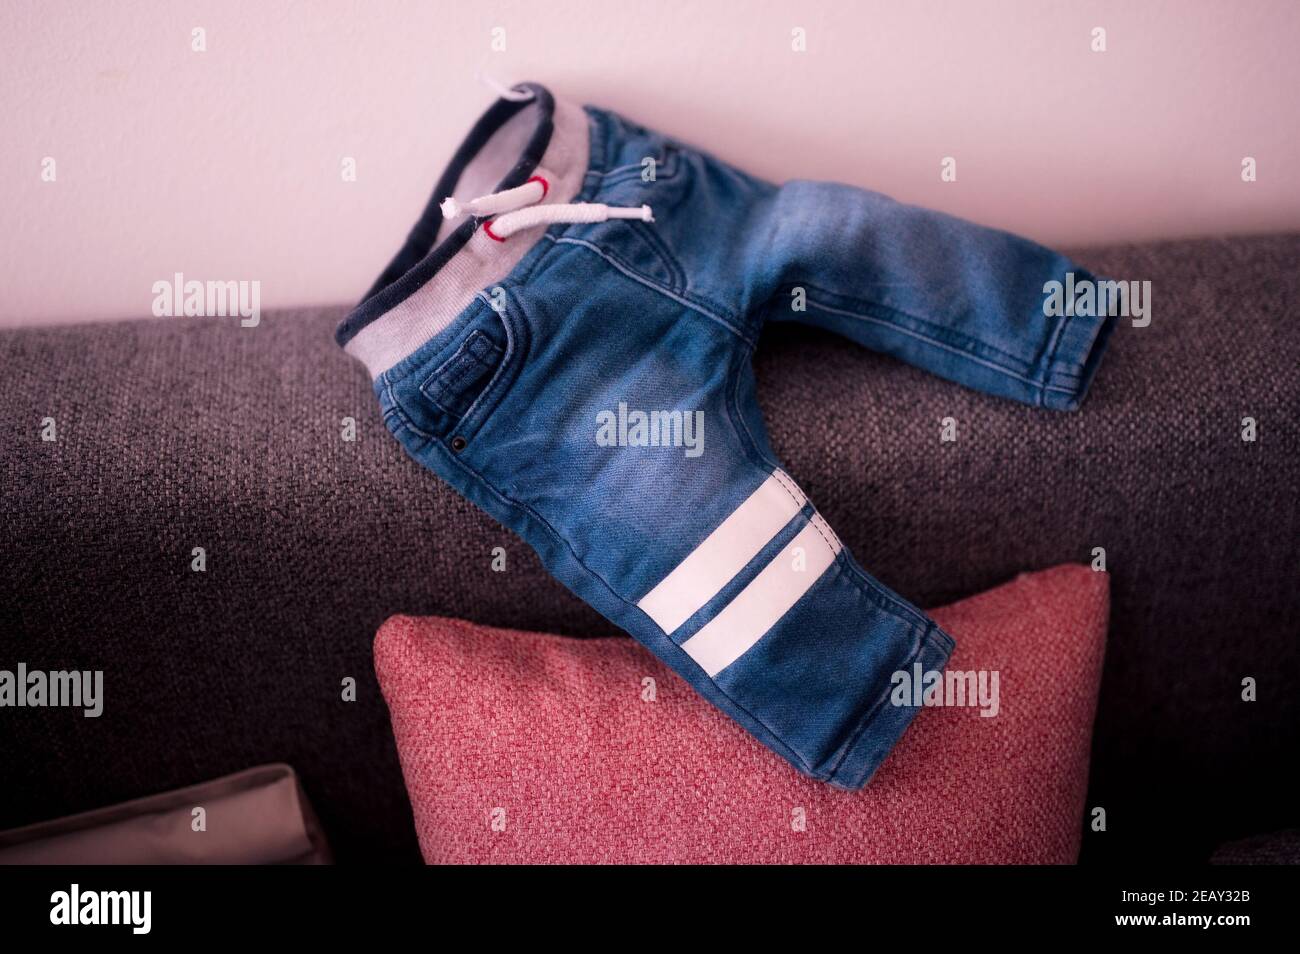 Pantalon jeans pour bébé sur le canapé Banque D'Images